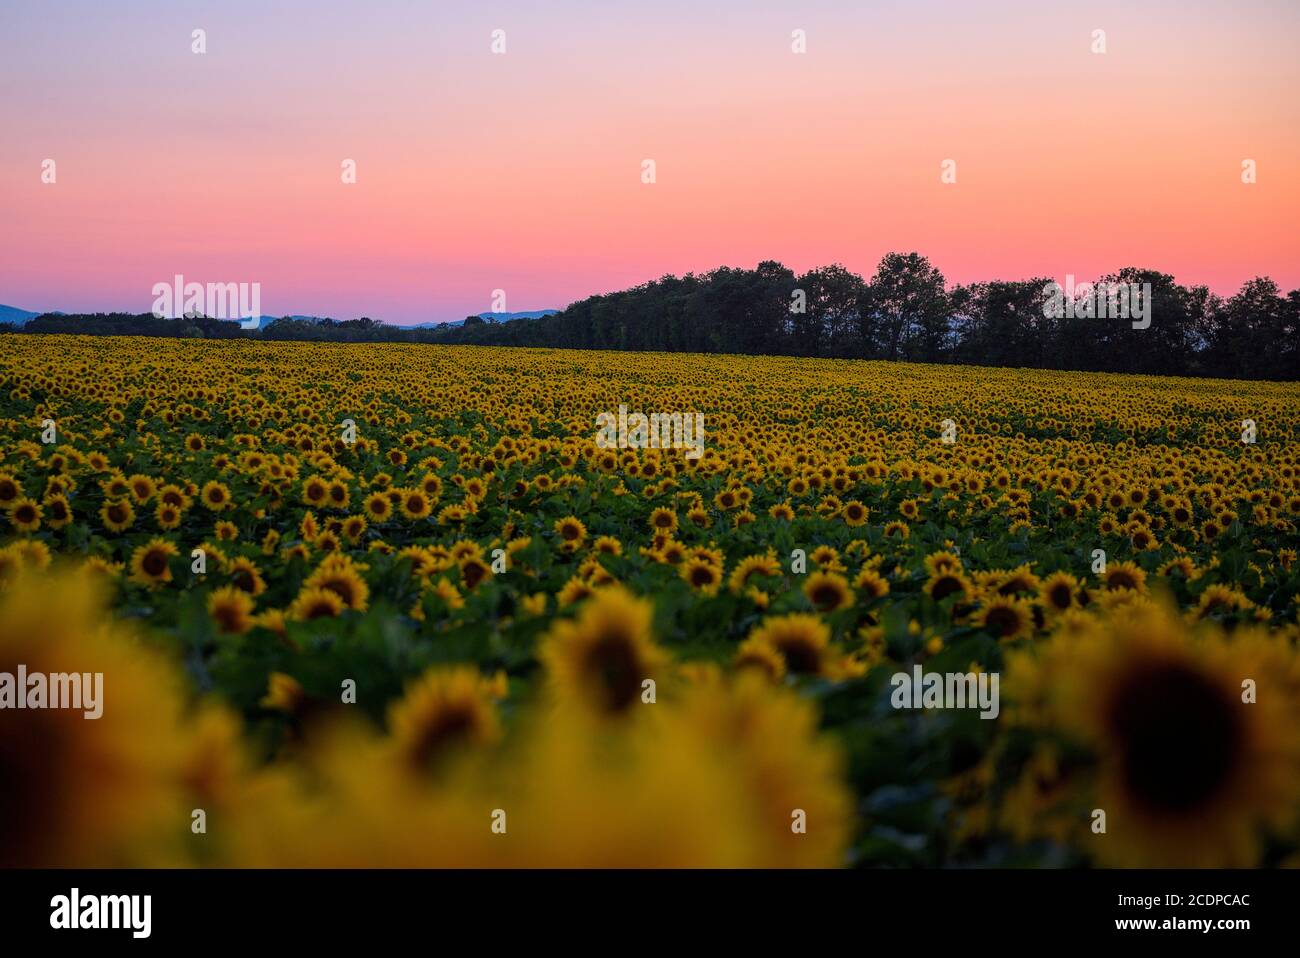 Sonnenblumenfeld bei abendlichen Gegenlicht 2 Foto Stock